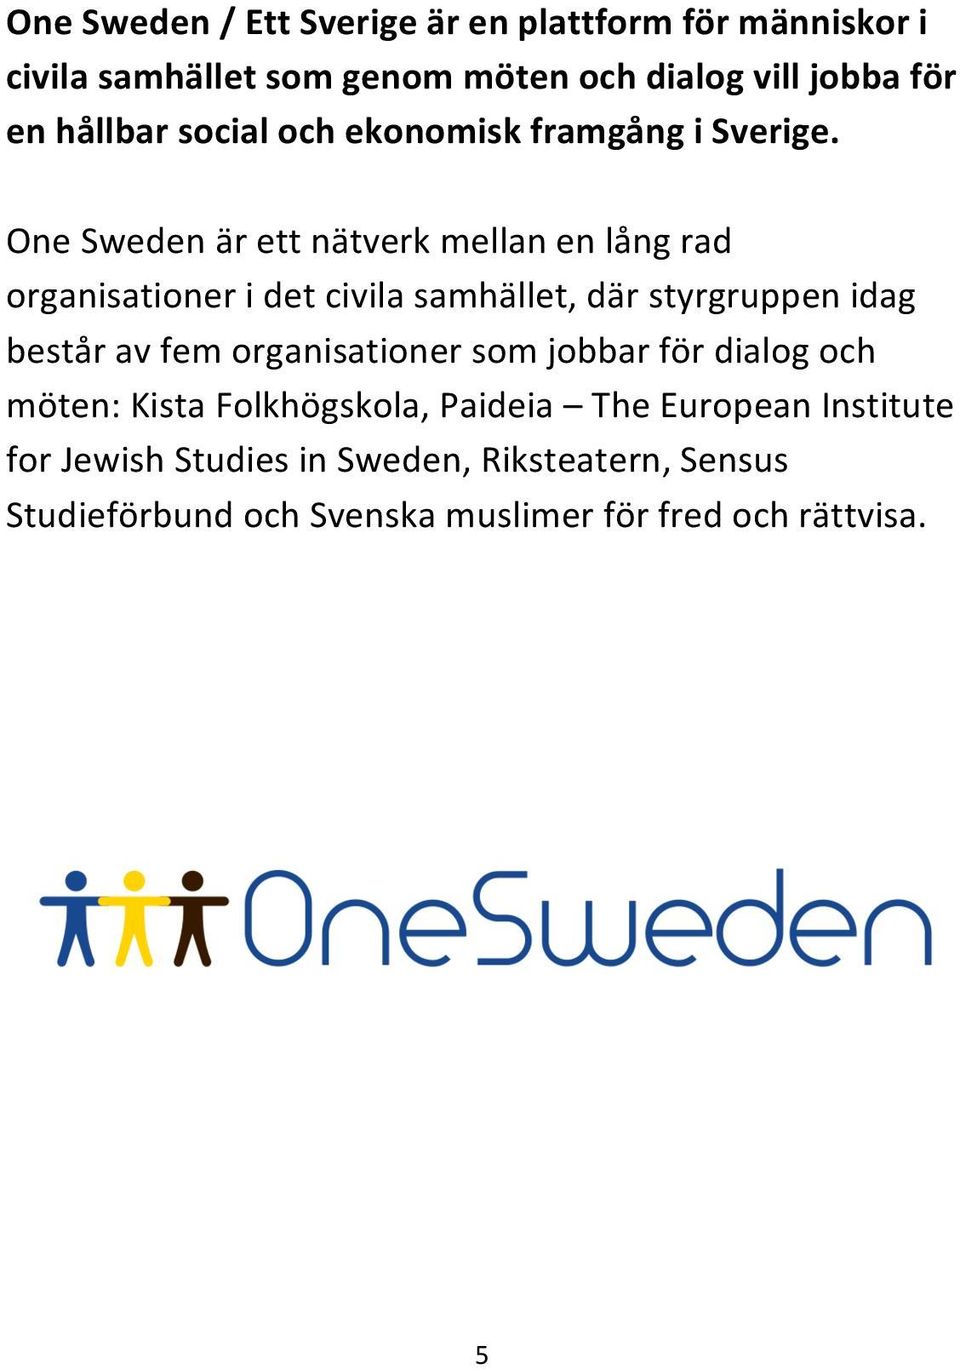 One Sweden är ett nätverk mellan en lång rad organisationer i det civila samhället, där styrgruppen idag består av fem